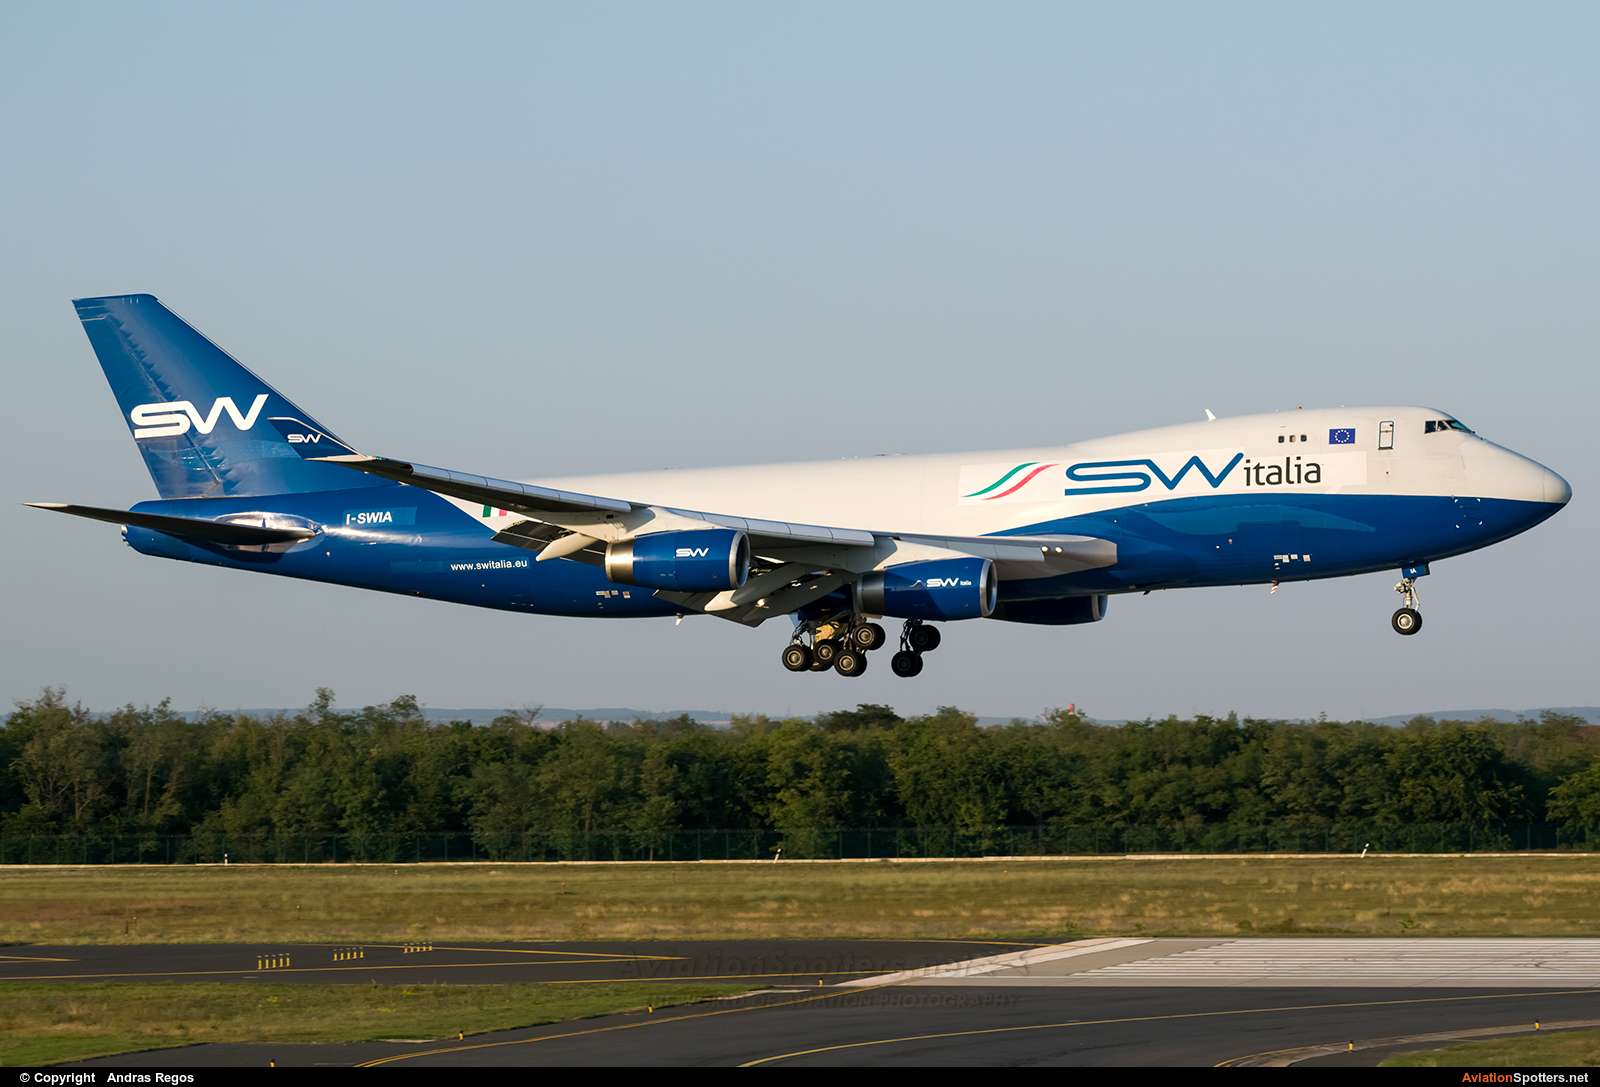 Silk Way Airlines  -  747-400  (I-SWIA) By Andras Regos (regos)